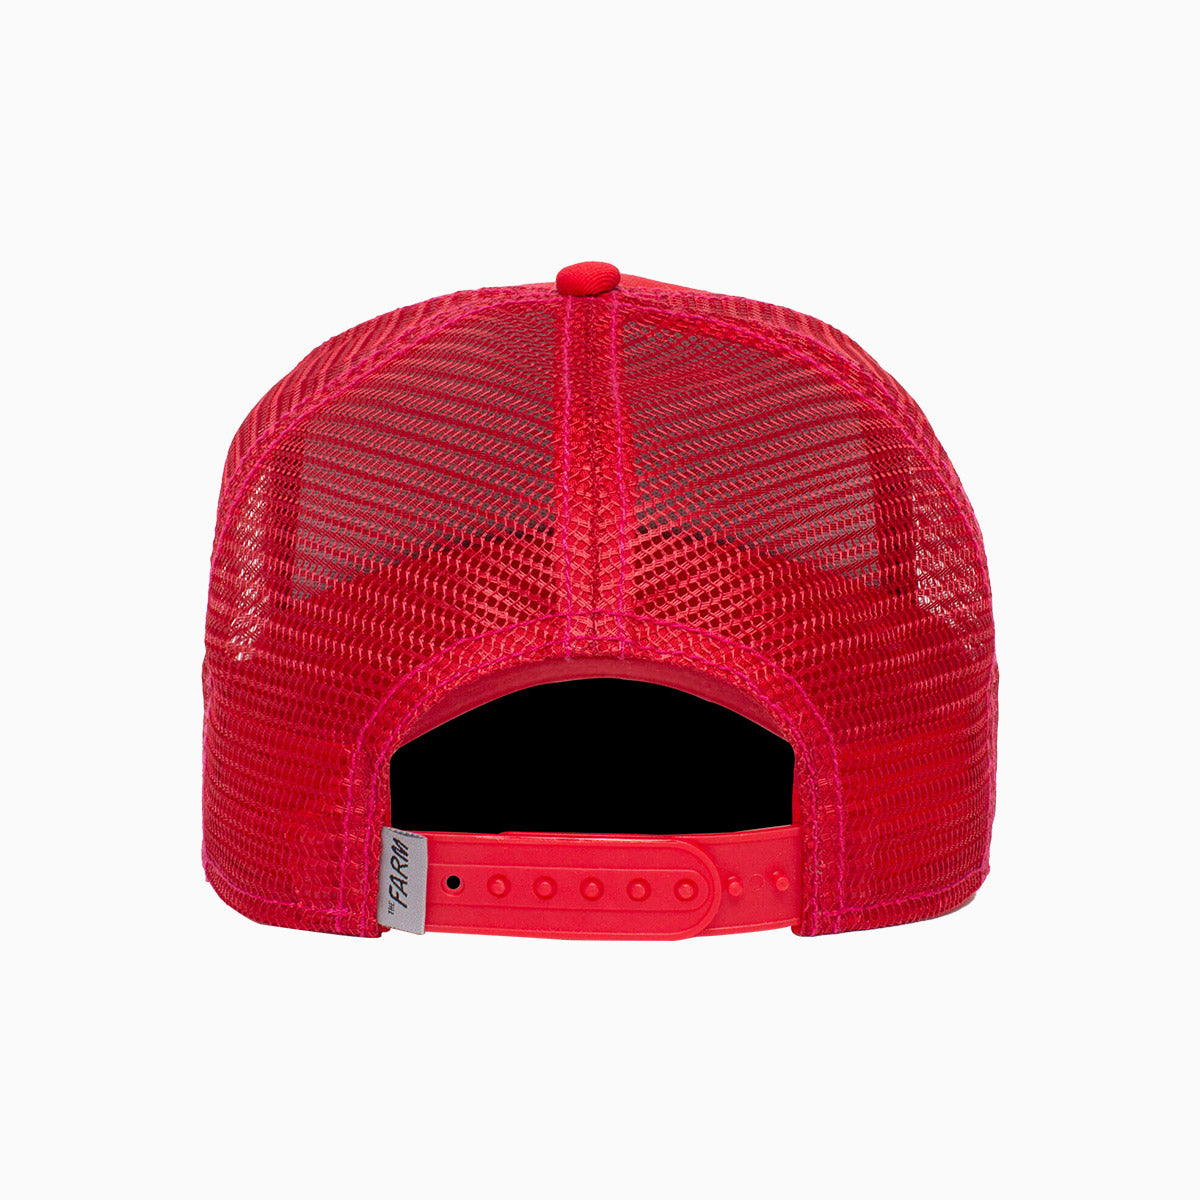 goorin-bros-the-sticky-bandit-trucker-hat-201-0009-red